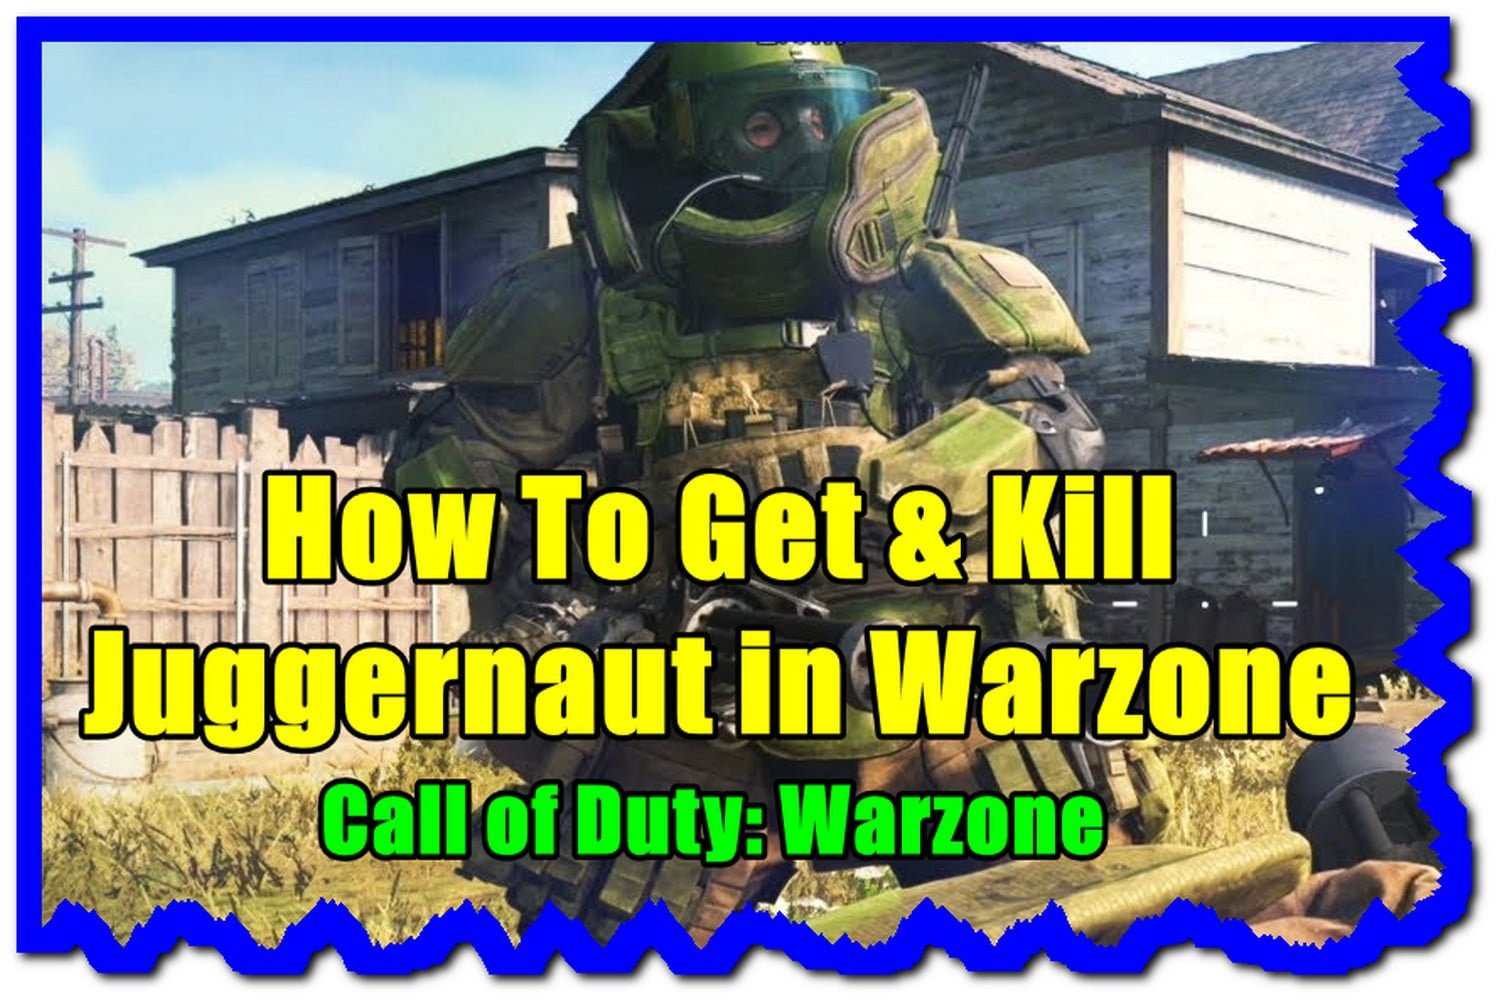 Juggernaut in Warzone